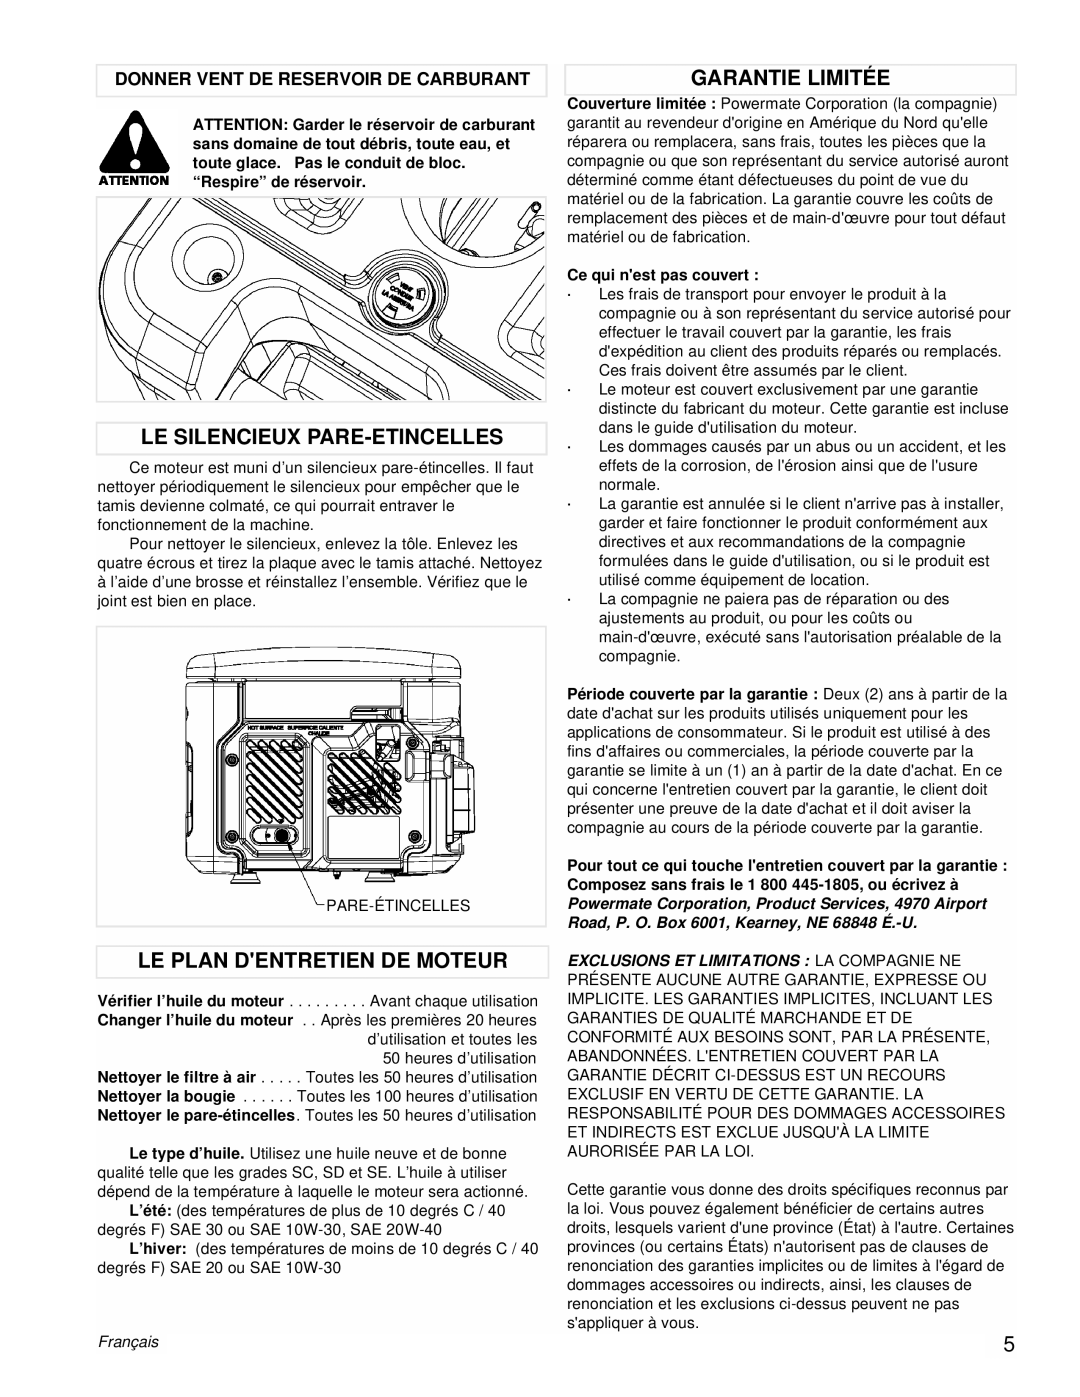 Powermate PM0431802 manual Le Silencieux Pare-Etincelles, Le Plan Dentretien De Moteur, Garantie Limitée, Français 